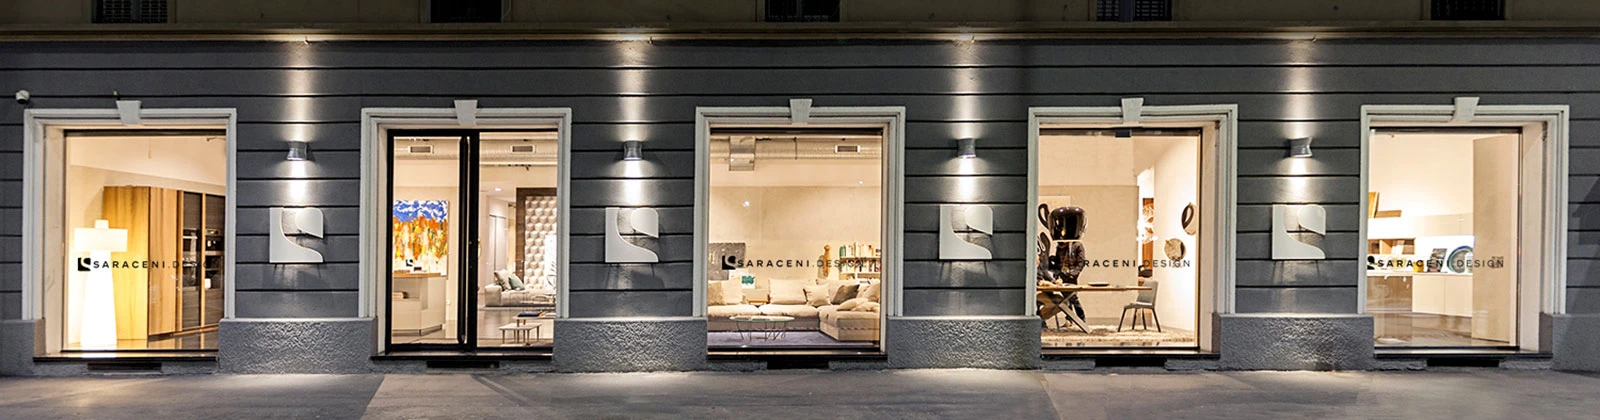 Saraceni Design Showroom Milano